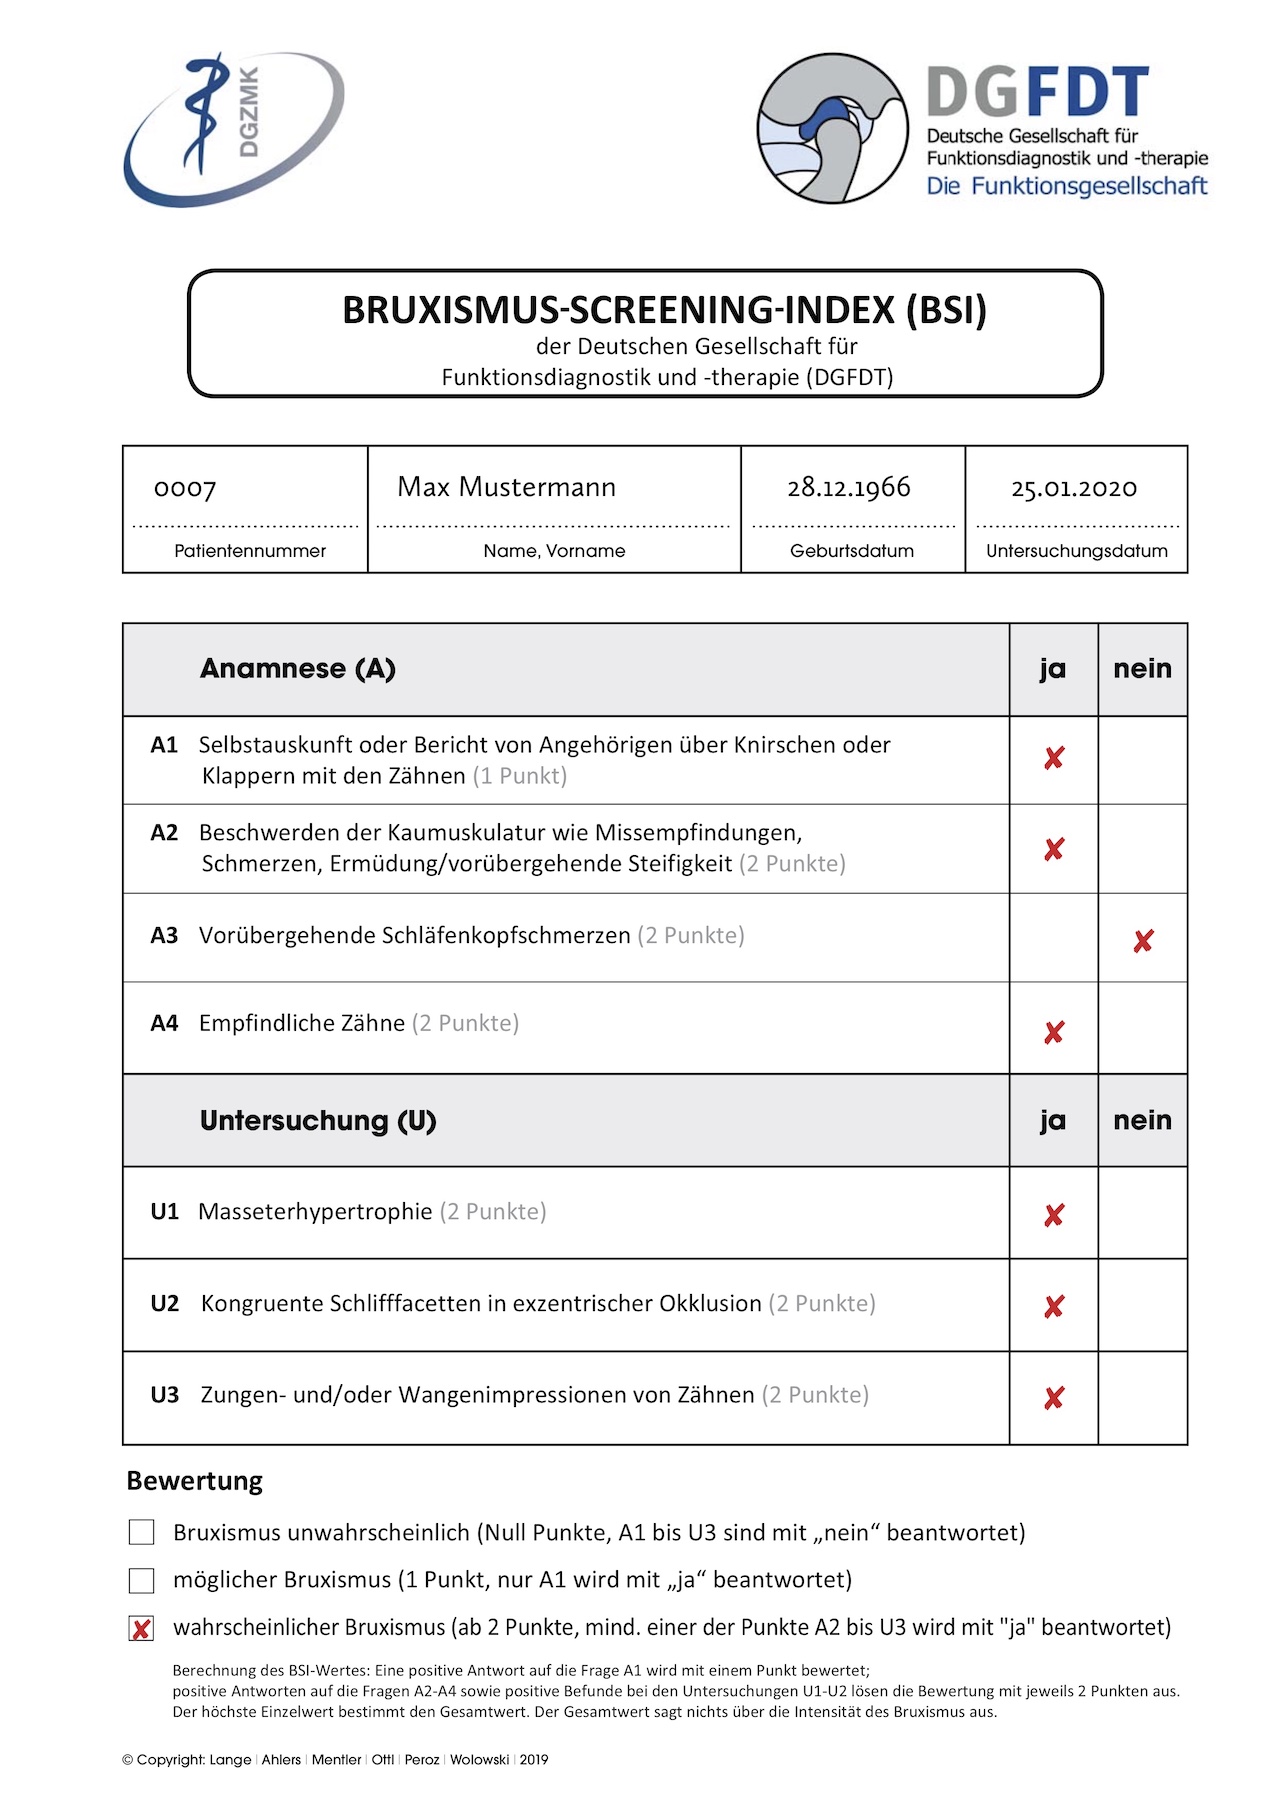 Abb. 1a: Befundbogen Bruxismus-Screening-Index (BSI) der DGFDT.     Das Formular zum Erheben des Bruxismus-Screening-Index kann auf der Homepage der DGFDT heruntergeladen werden. (Copyright: Lange/Ahlers/Mentler/Ottl/Peroz/Wolowski)